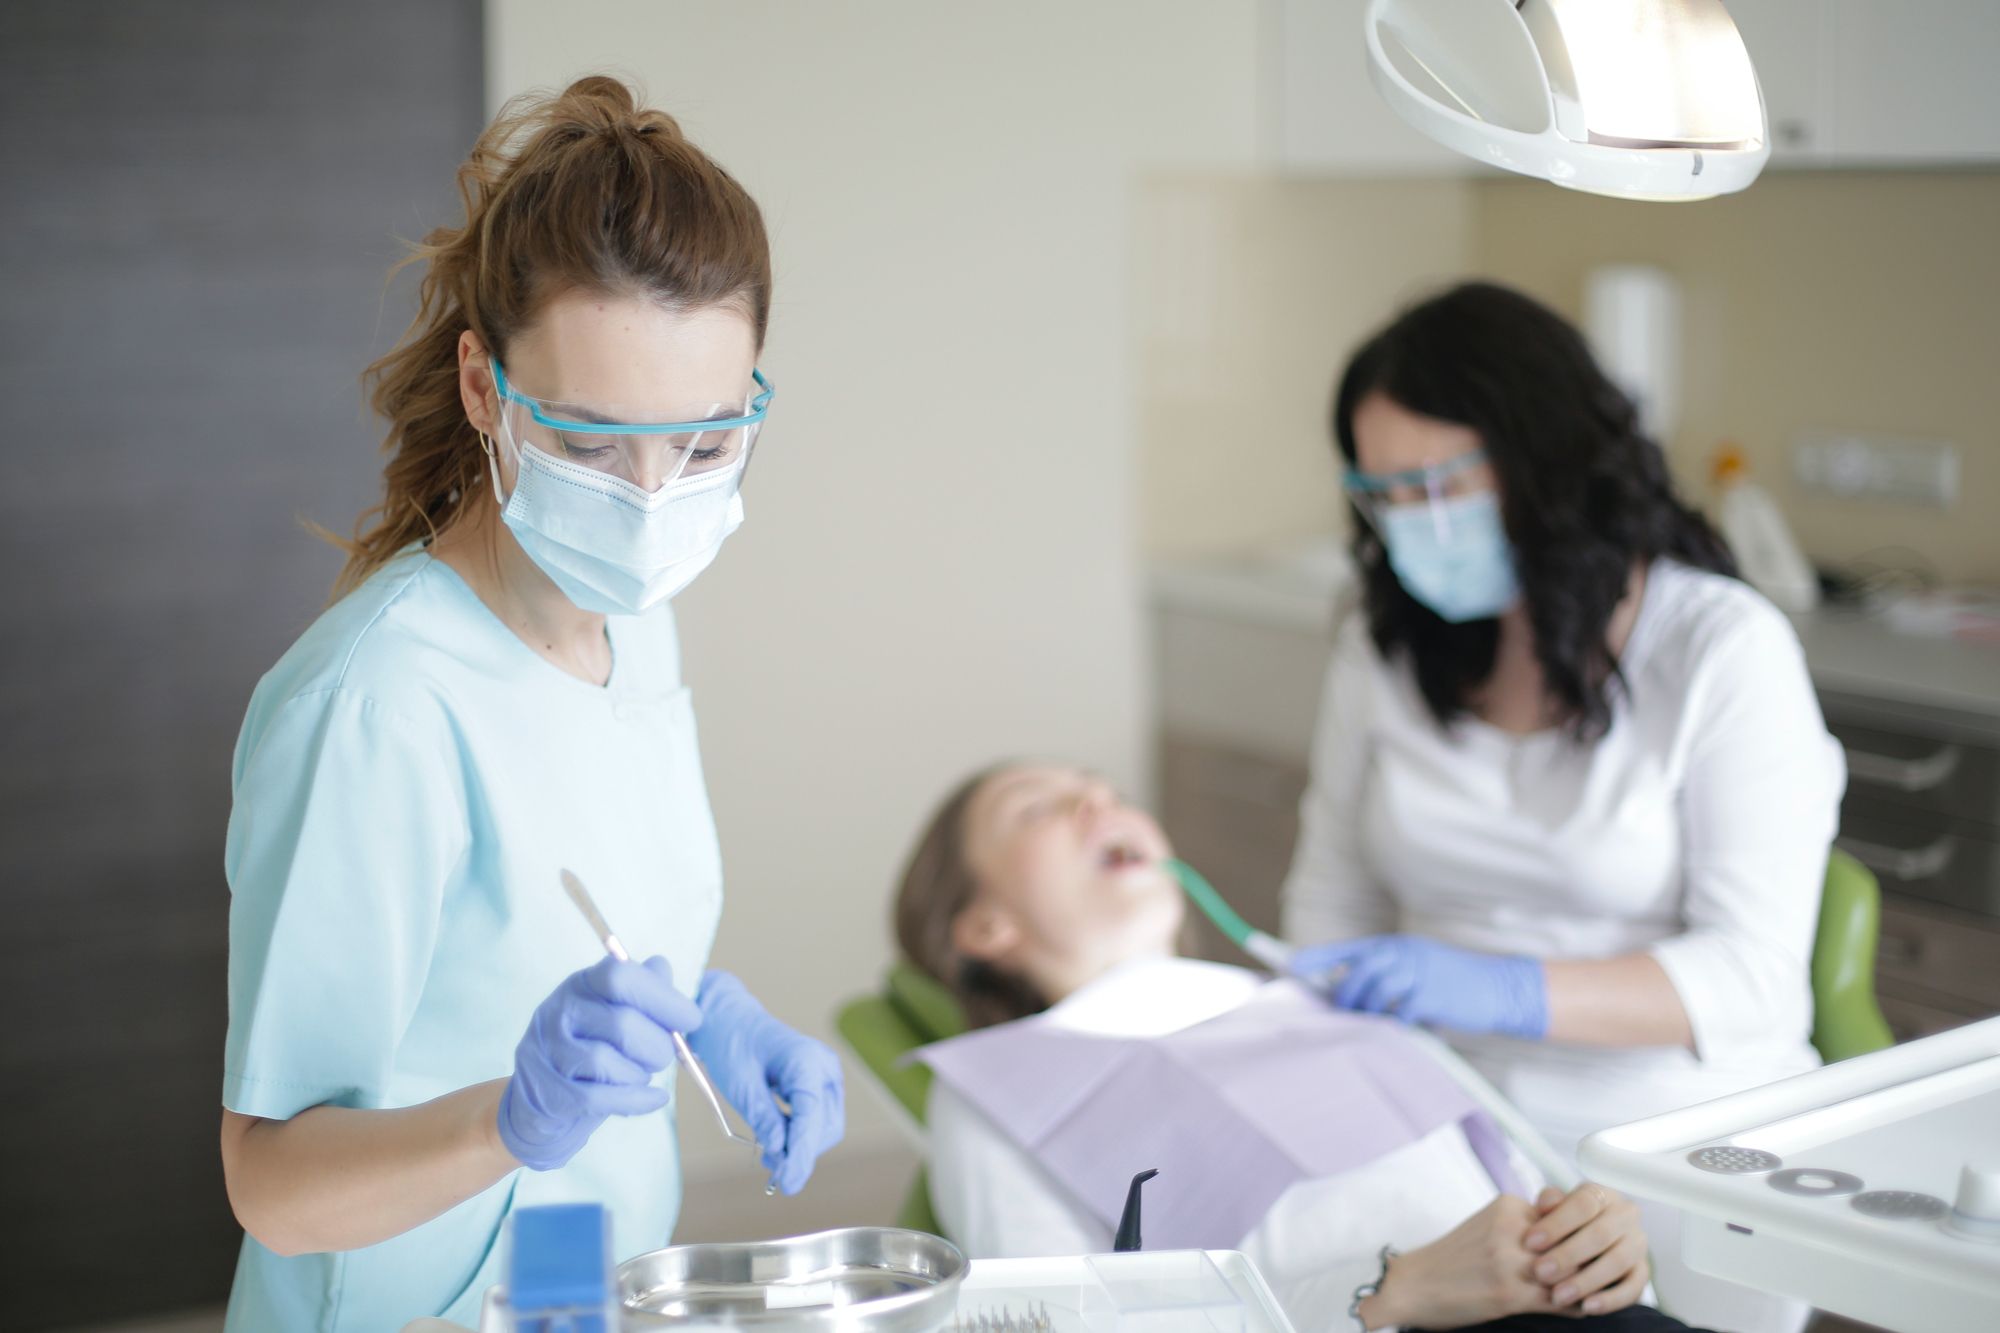 6 Ways to Show Appreciation to the Dental Team. Photo courtesy of Andrea Piacquadio/pexels.com